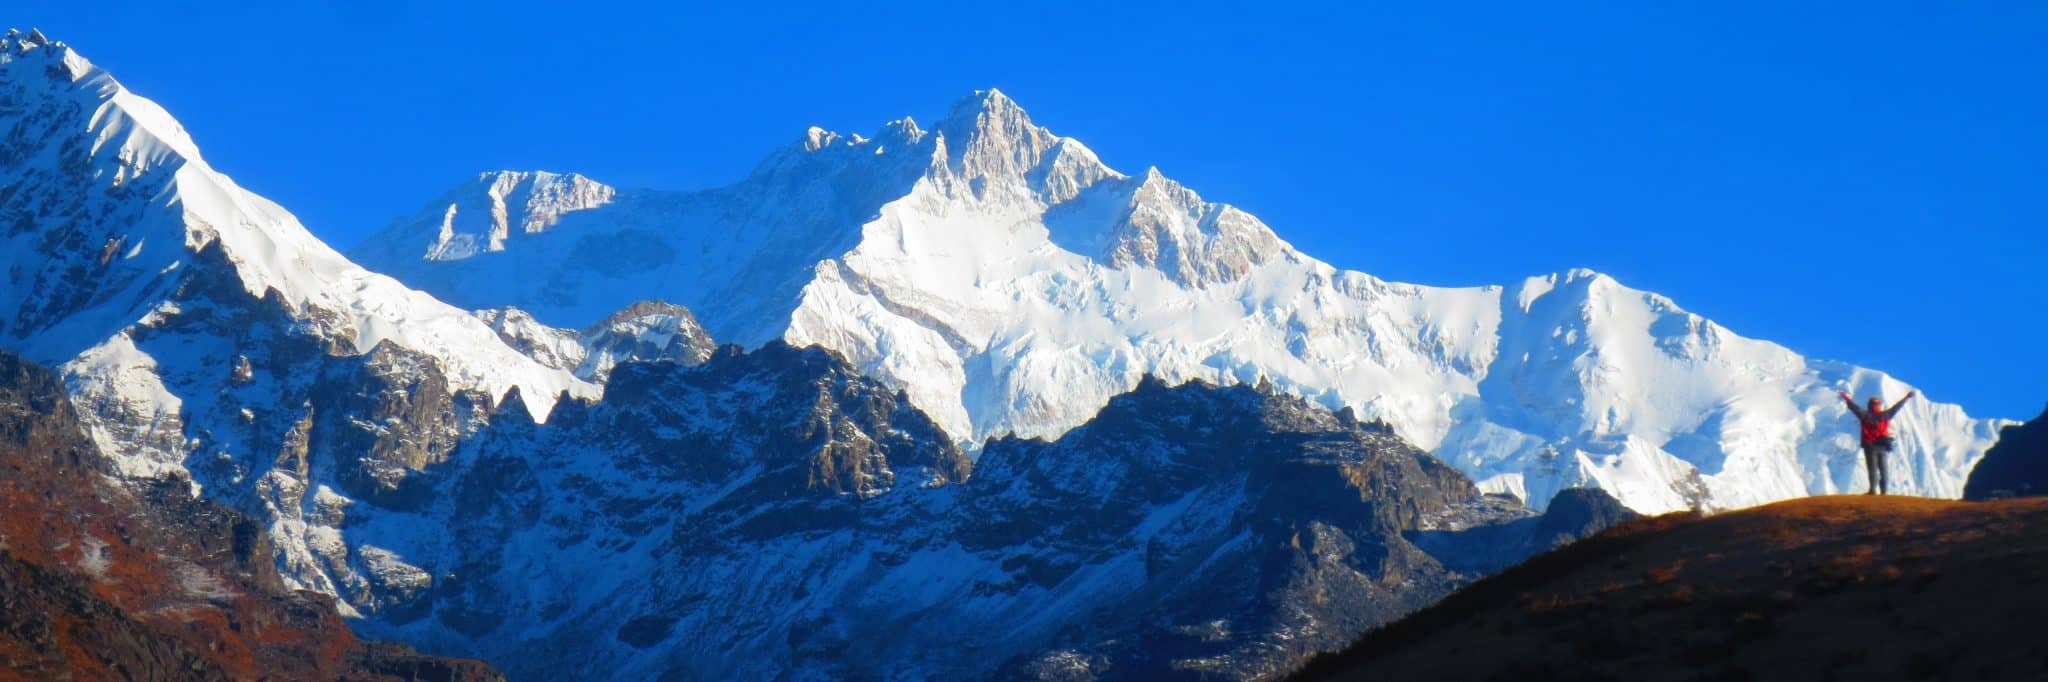 Goechala trek | Himalayan Treks by Plan The Unplanned